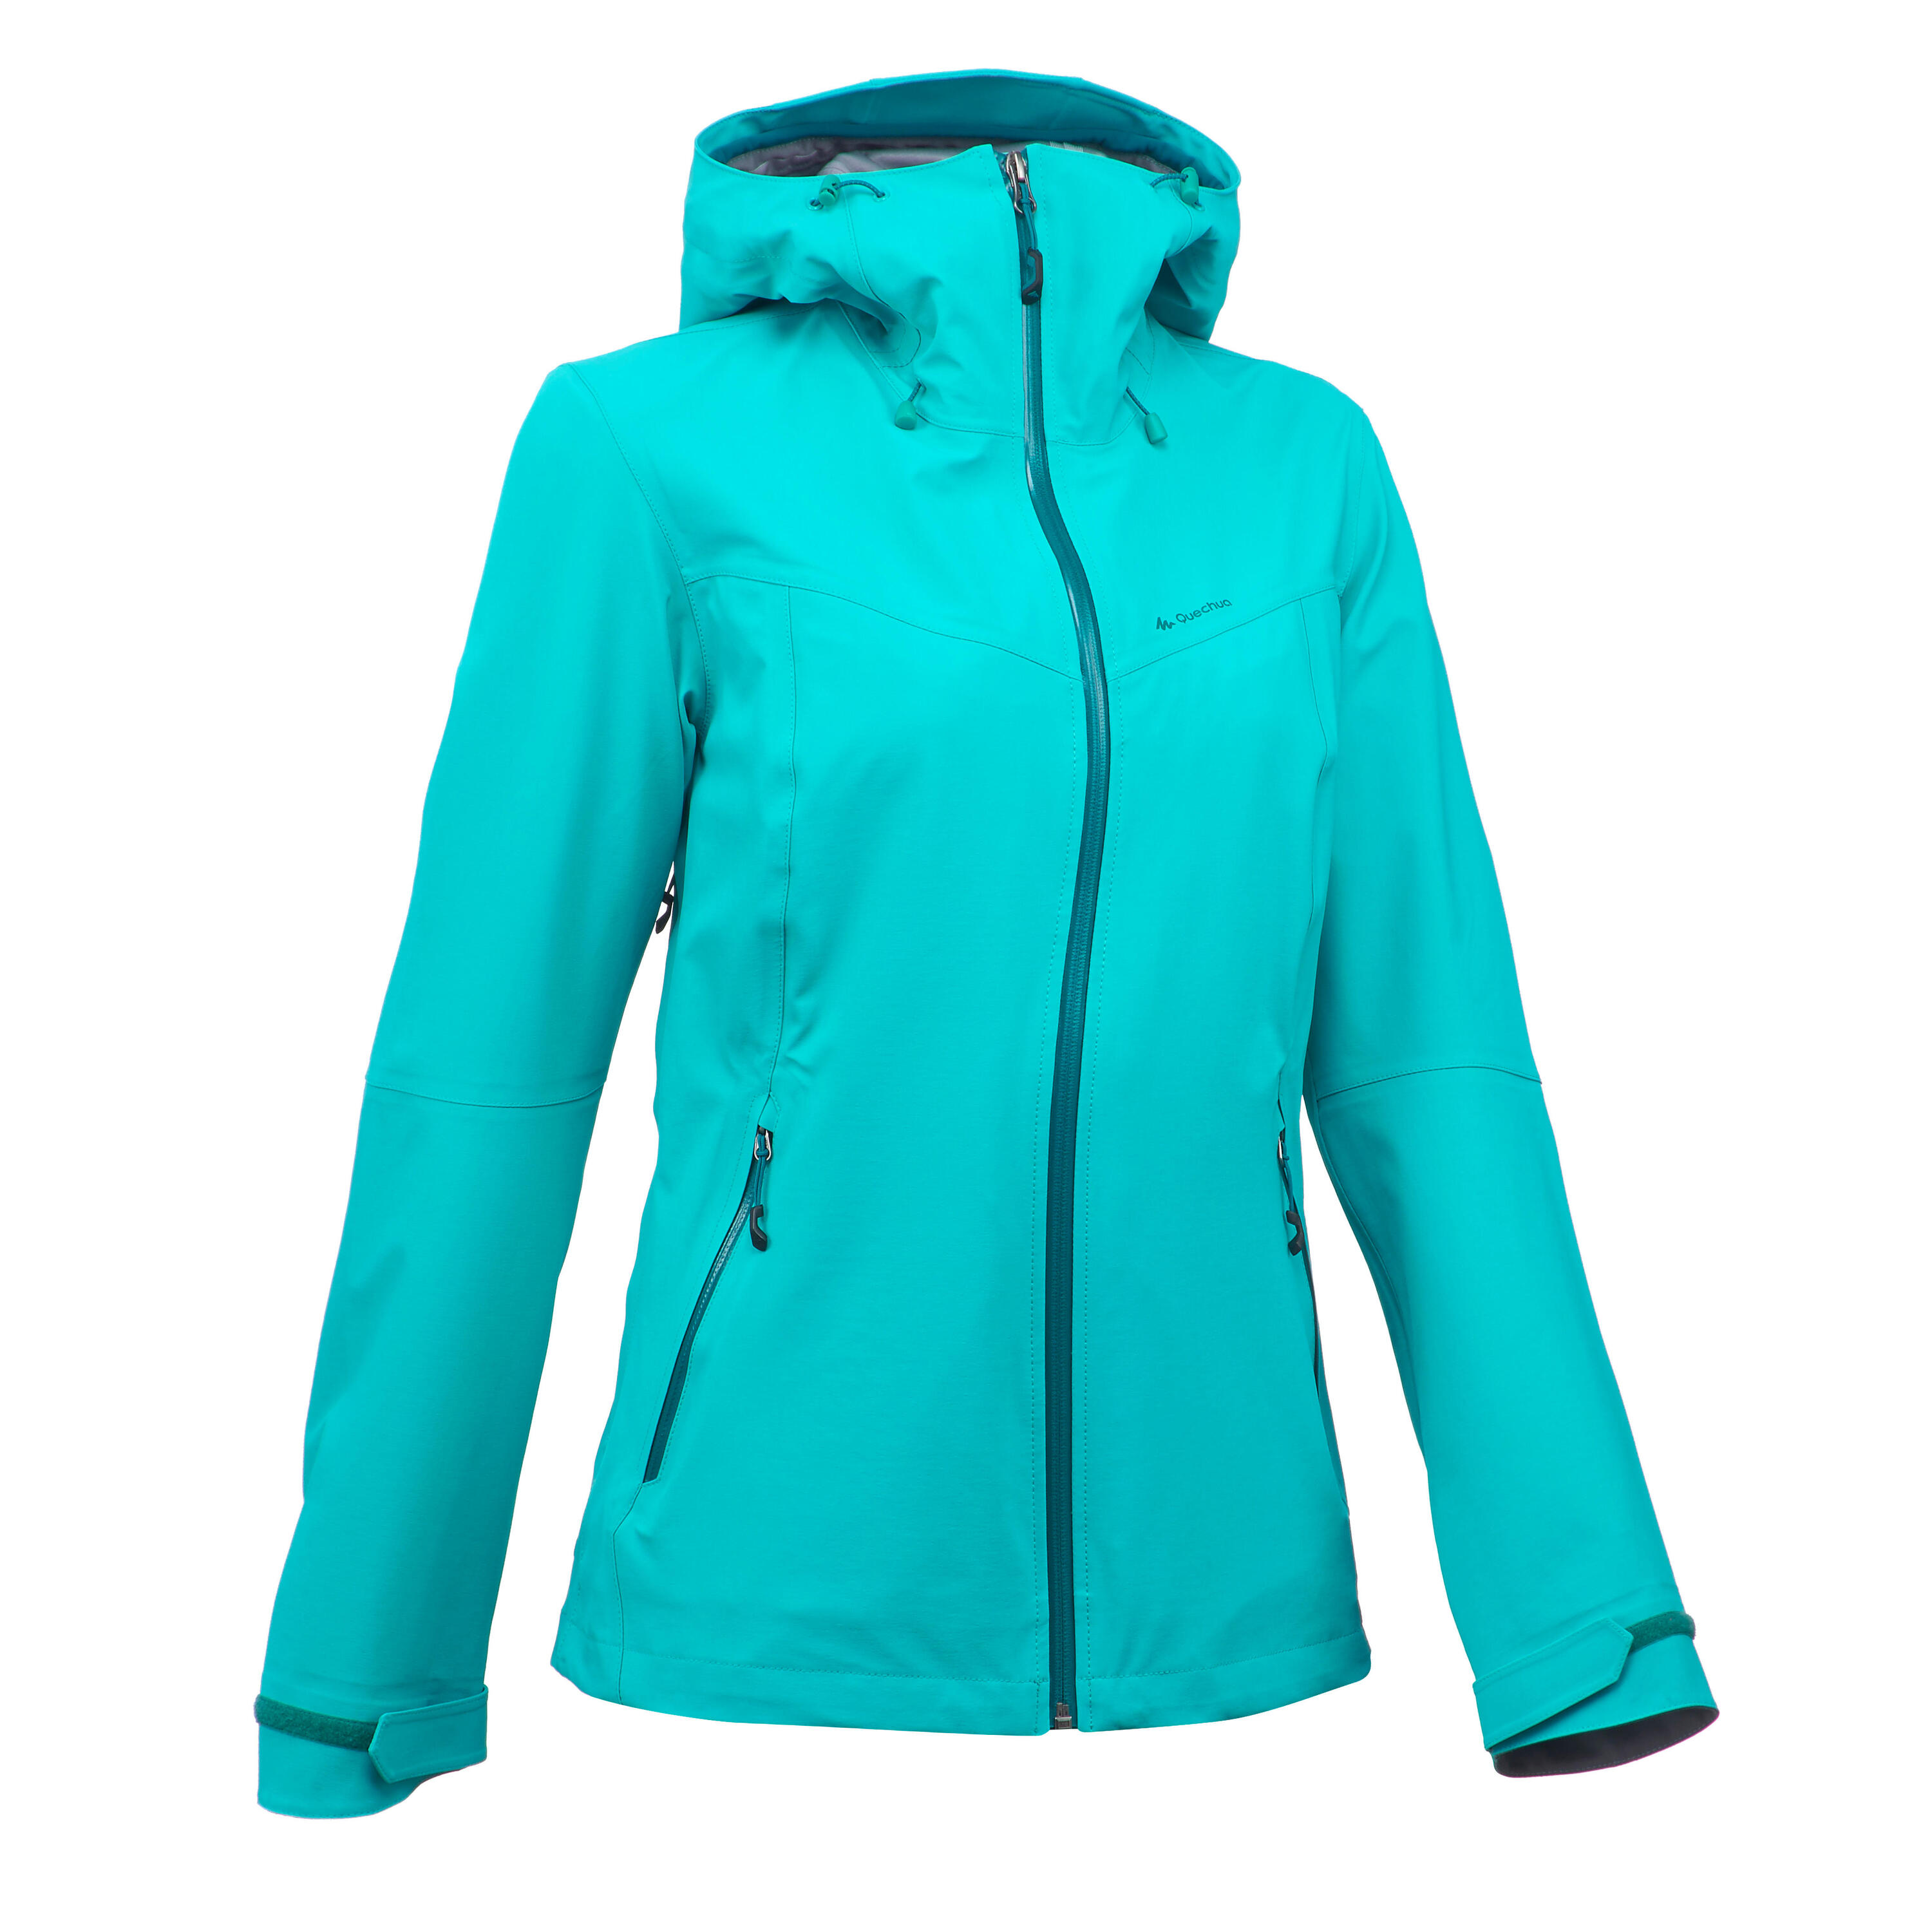 QUECHUA MH500 Women's Mountain Hiking Waterproof Jacket - Turquoise